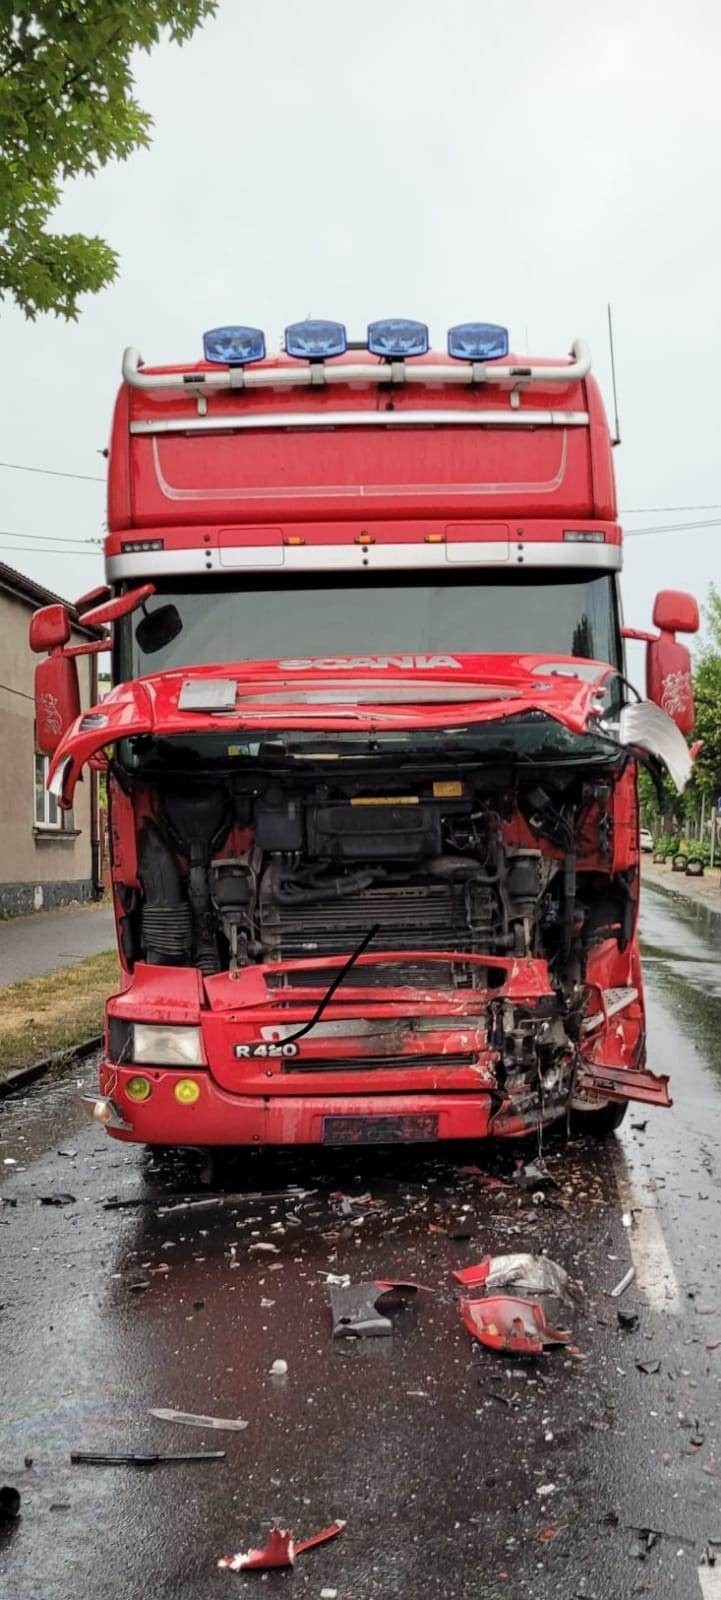 Śmiertelny wypadek w Ozorkowie. Ciężarówka zderzyła się z samochodem osobowym. Nie żyje kobieta